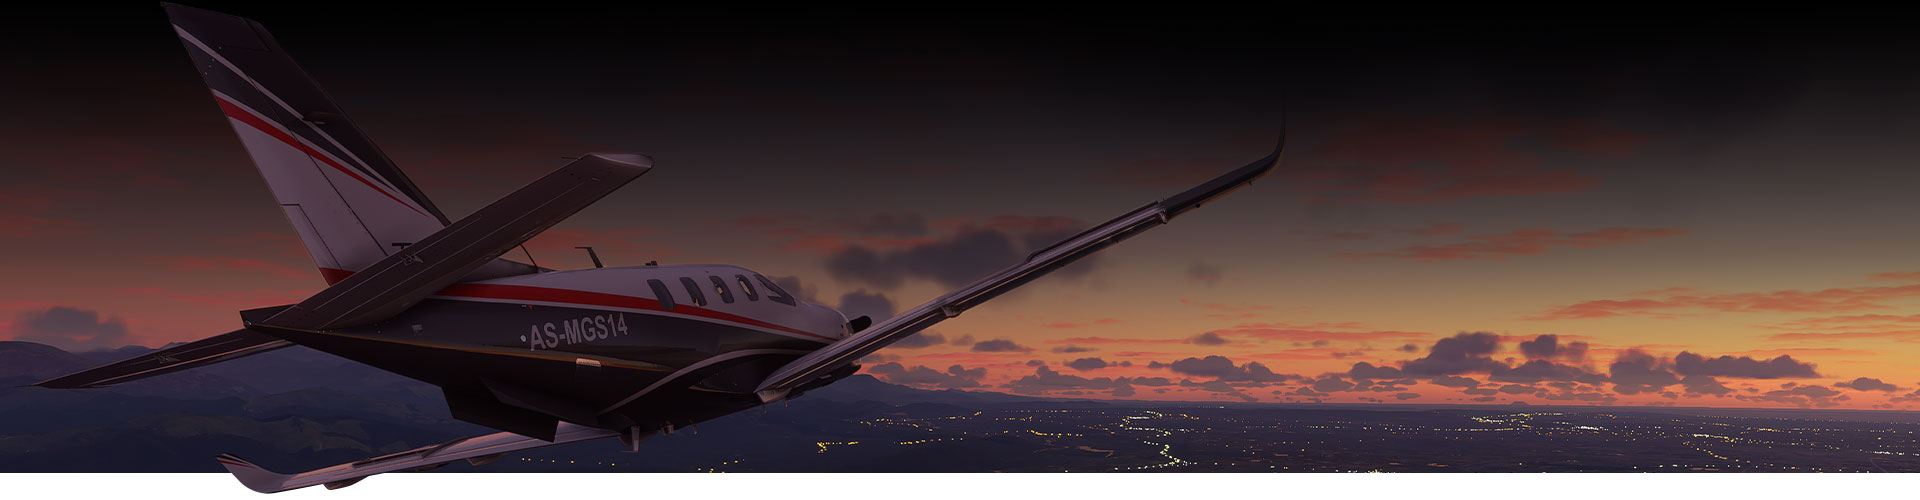 Letadlo z Microsoft Flight Simulator letící nad městem při západu slunce